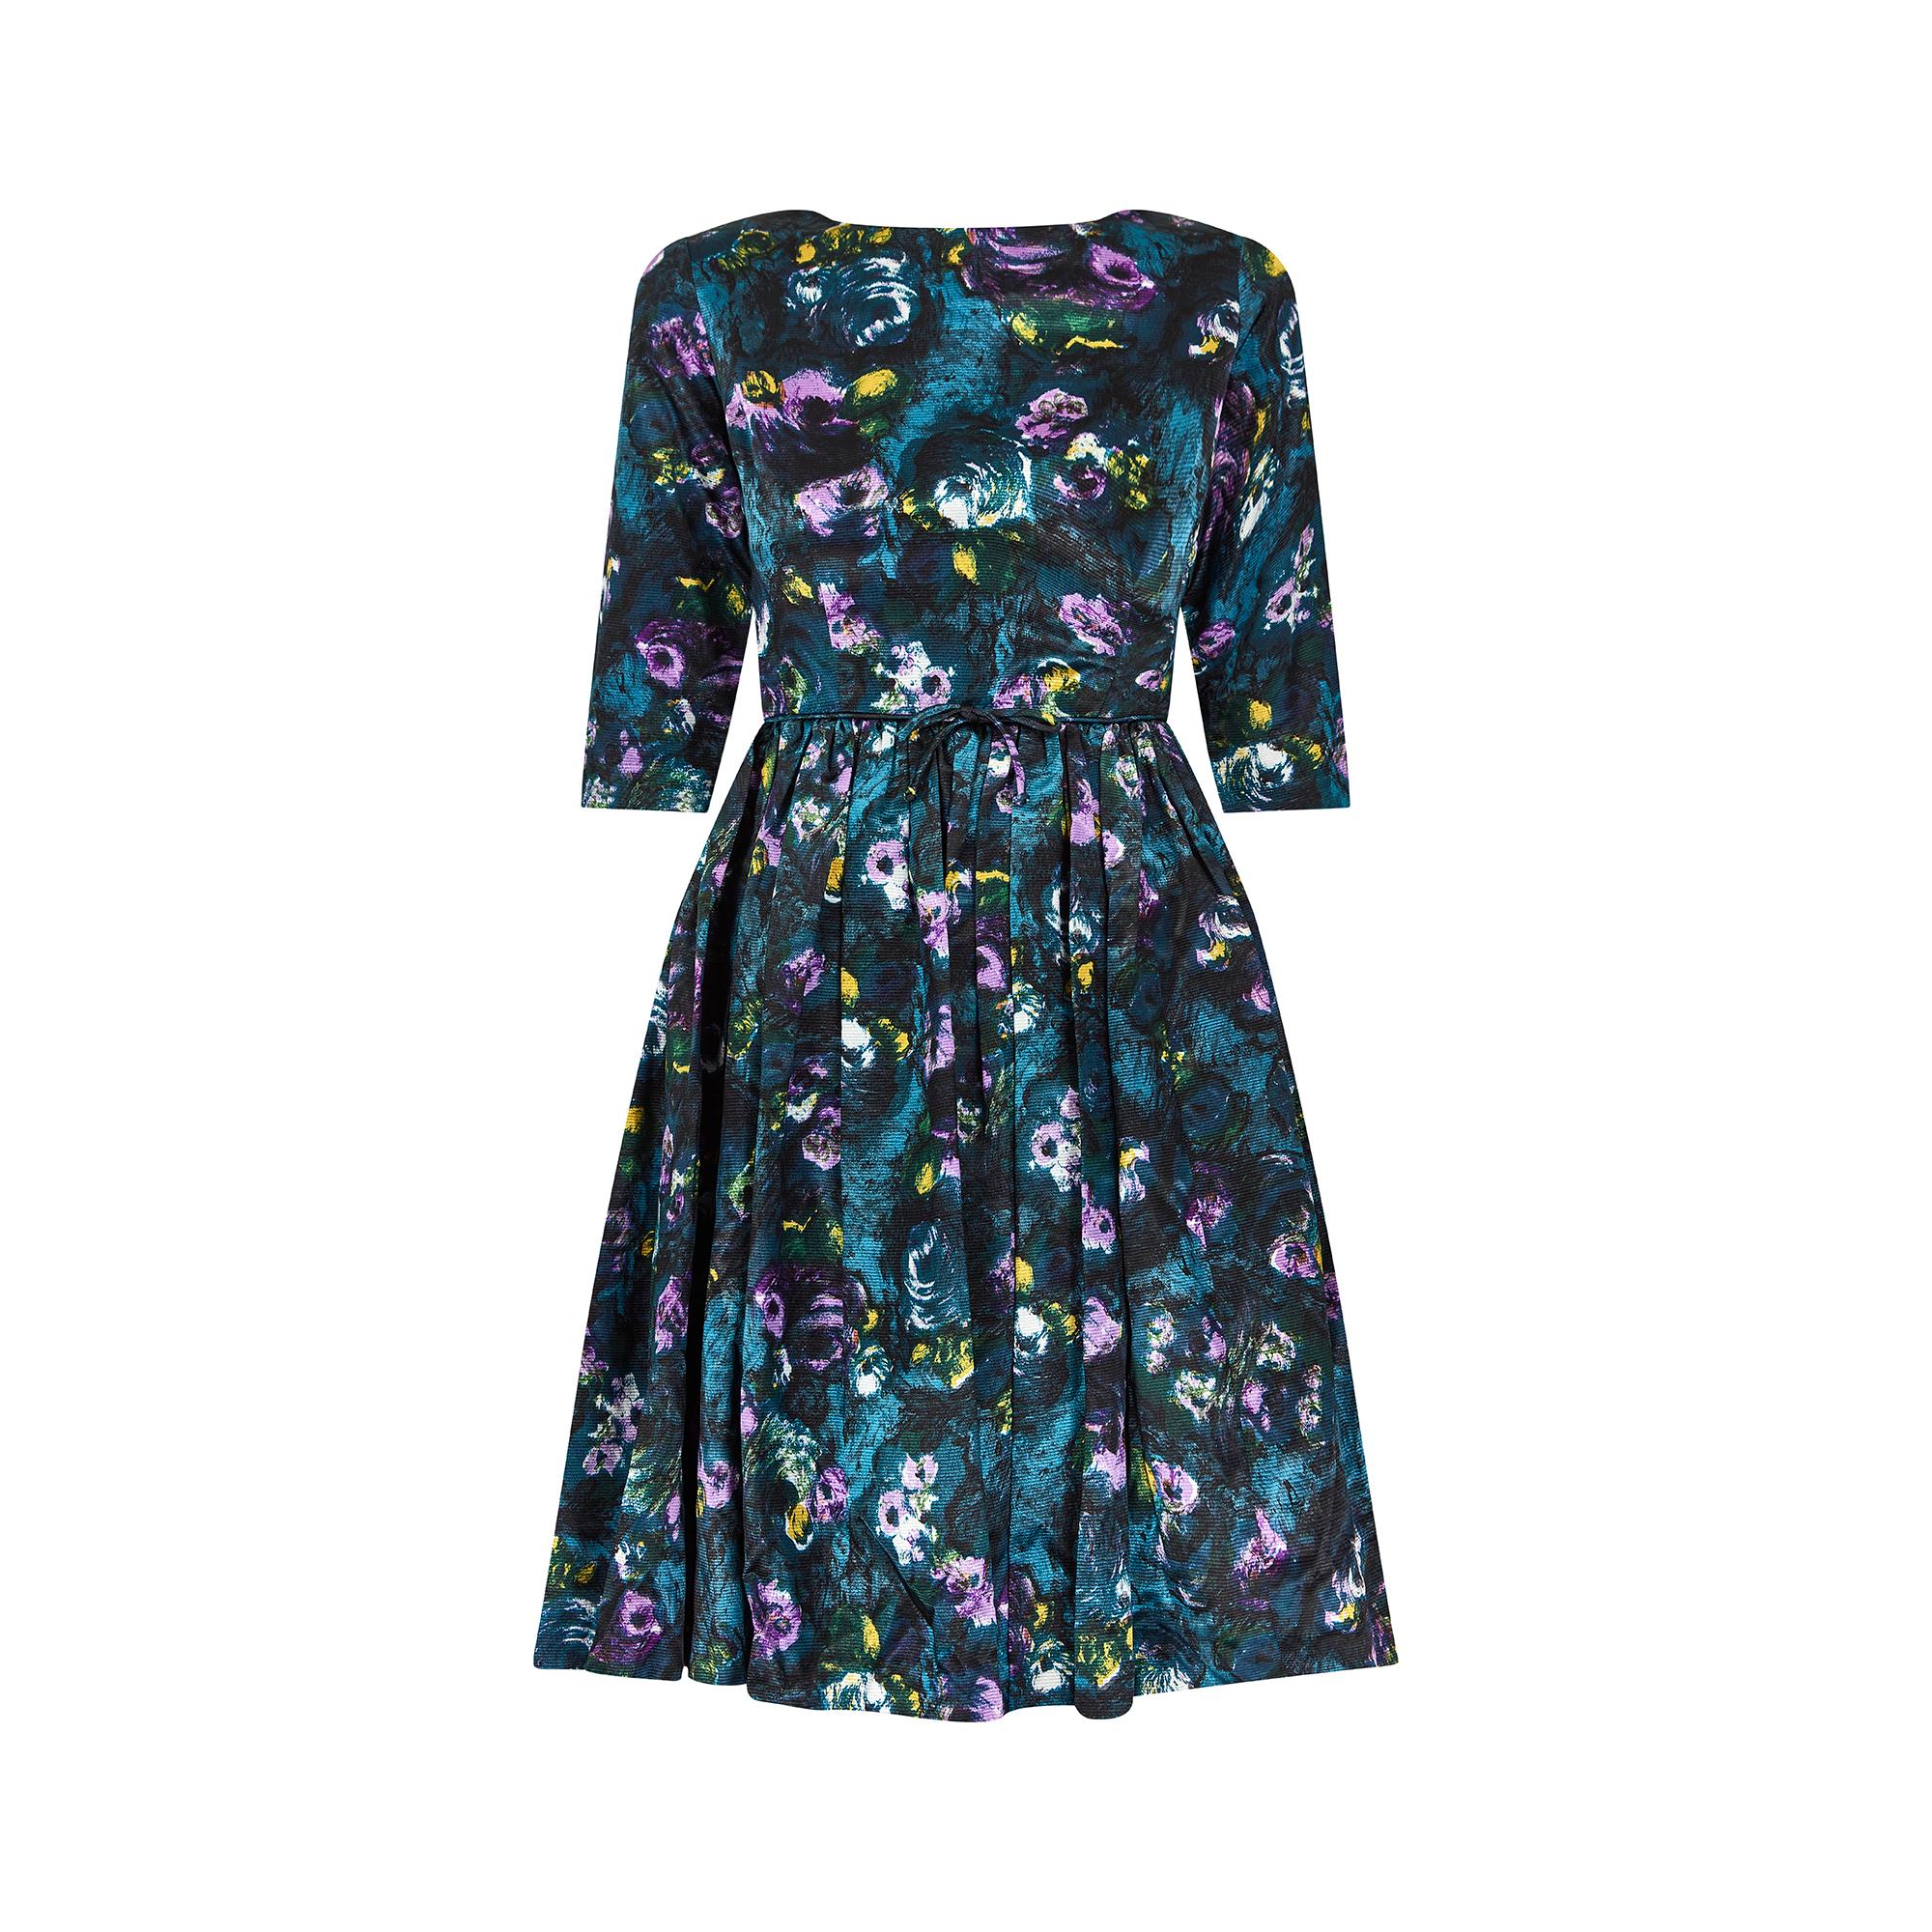 Superbe exemple d'une robe de jour du début des années 1960, mais qui pourrait tout aussi bien être portée dans un cadre plus formel ou comme robe de cocktail. Coupé dans un tissu en soie irisée bleu sarcelle, il présente une encolure haute et